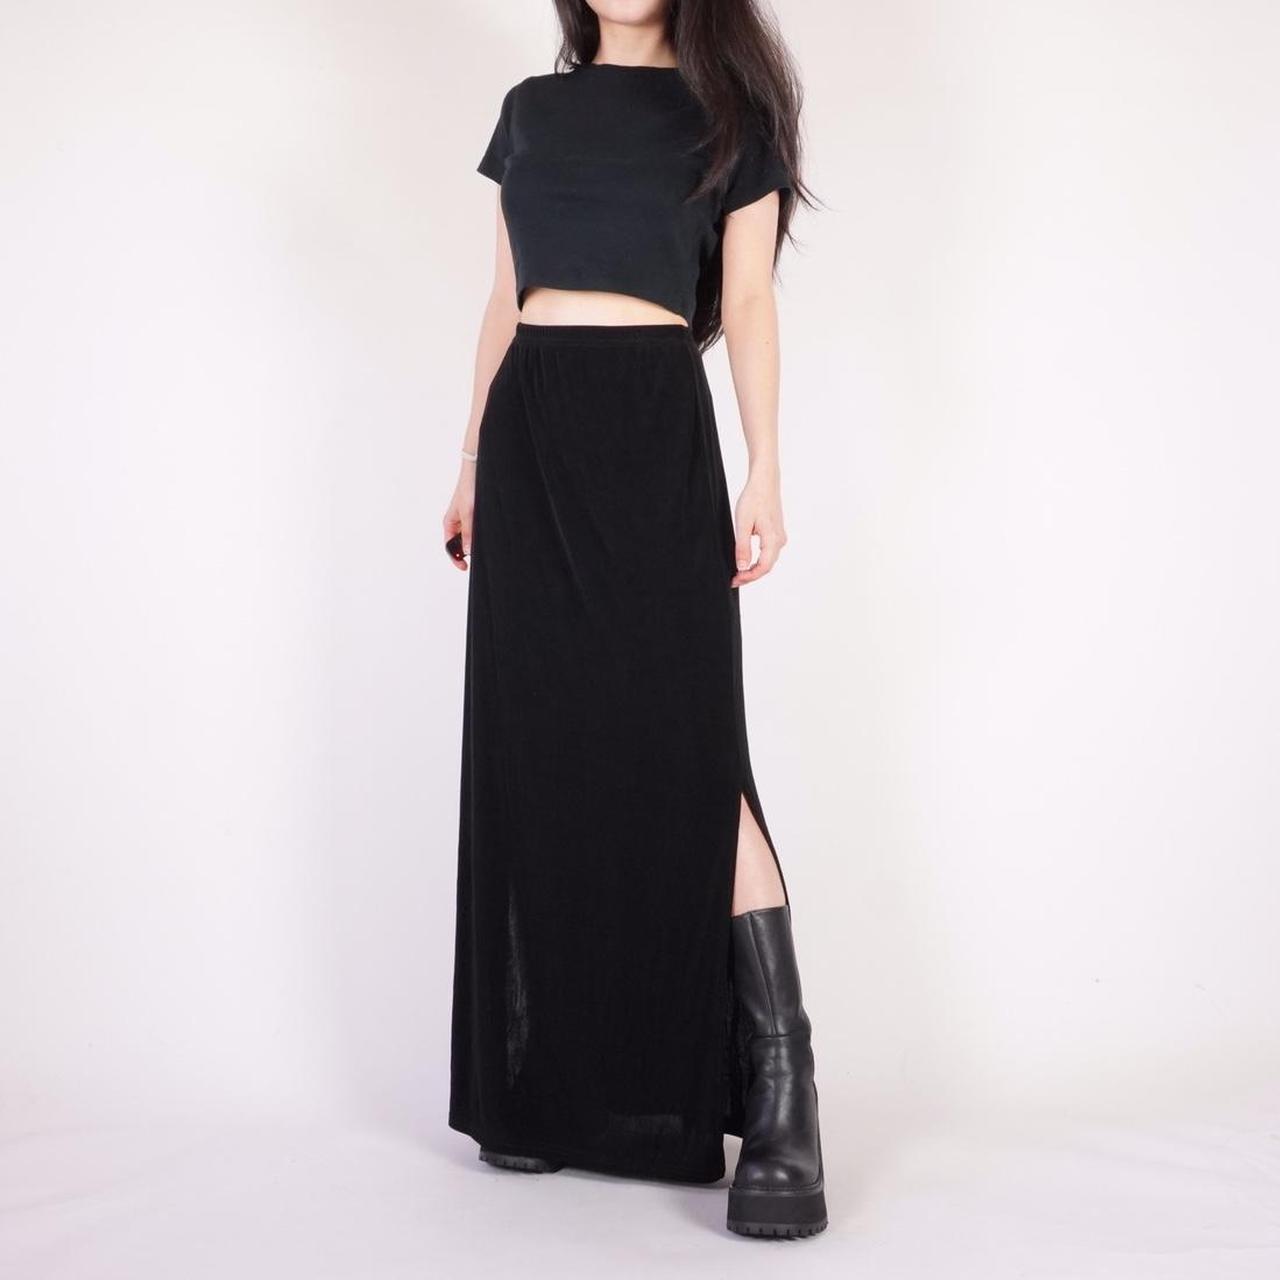 90s slinky black maxi skirt w/ stretch waist Brand:... - Depop